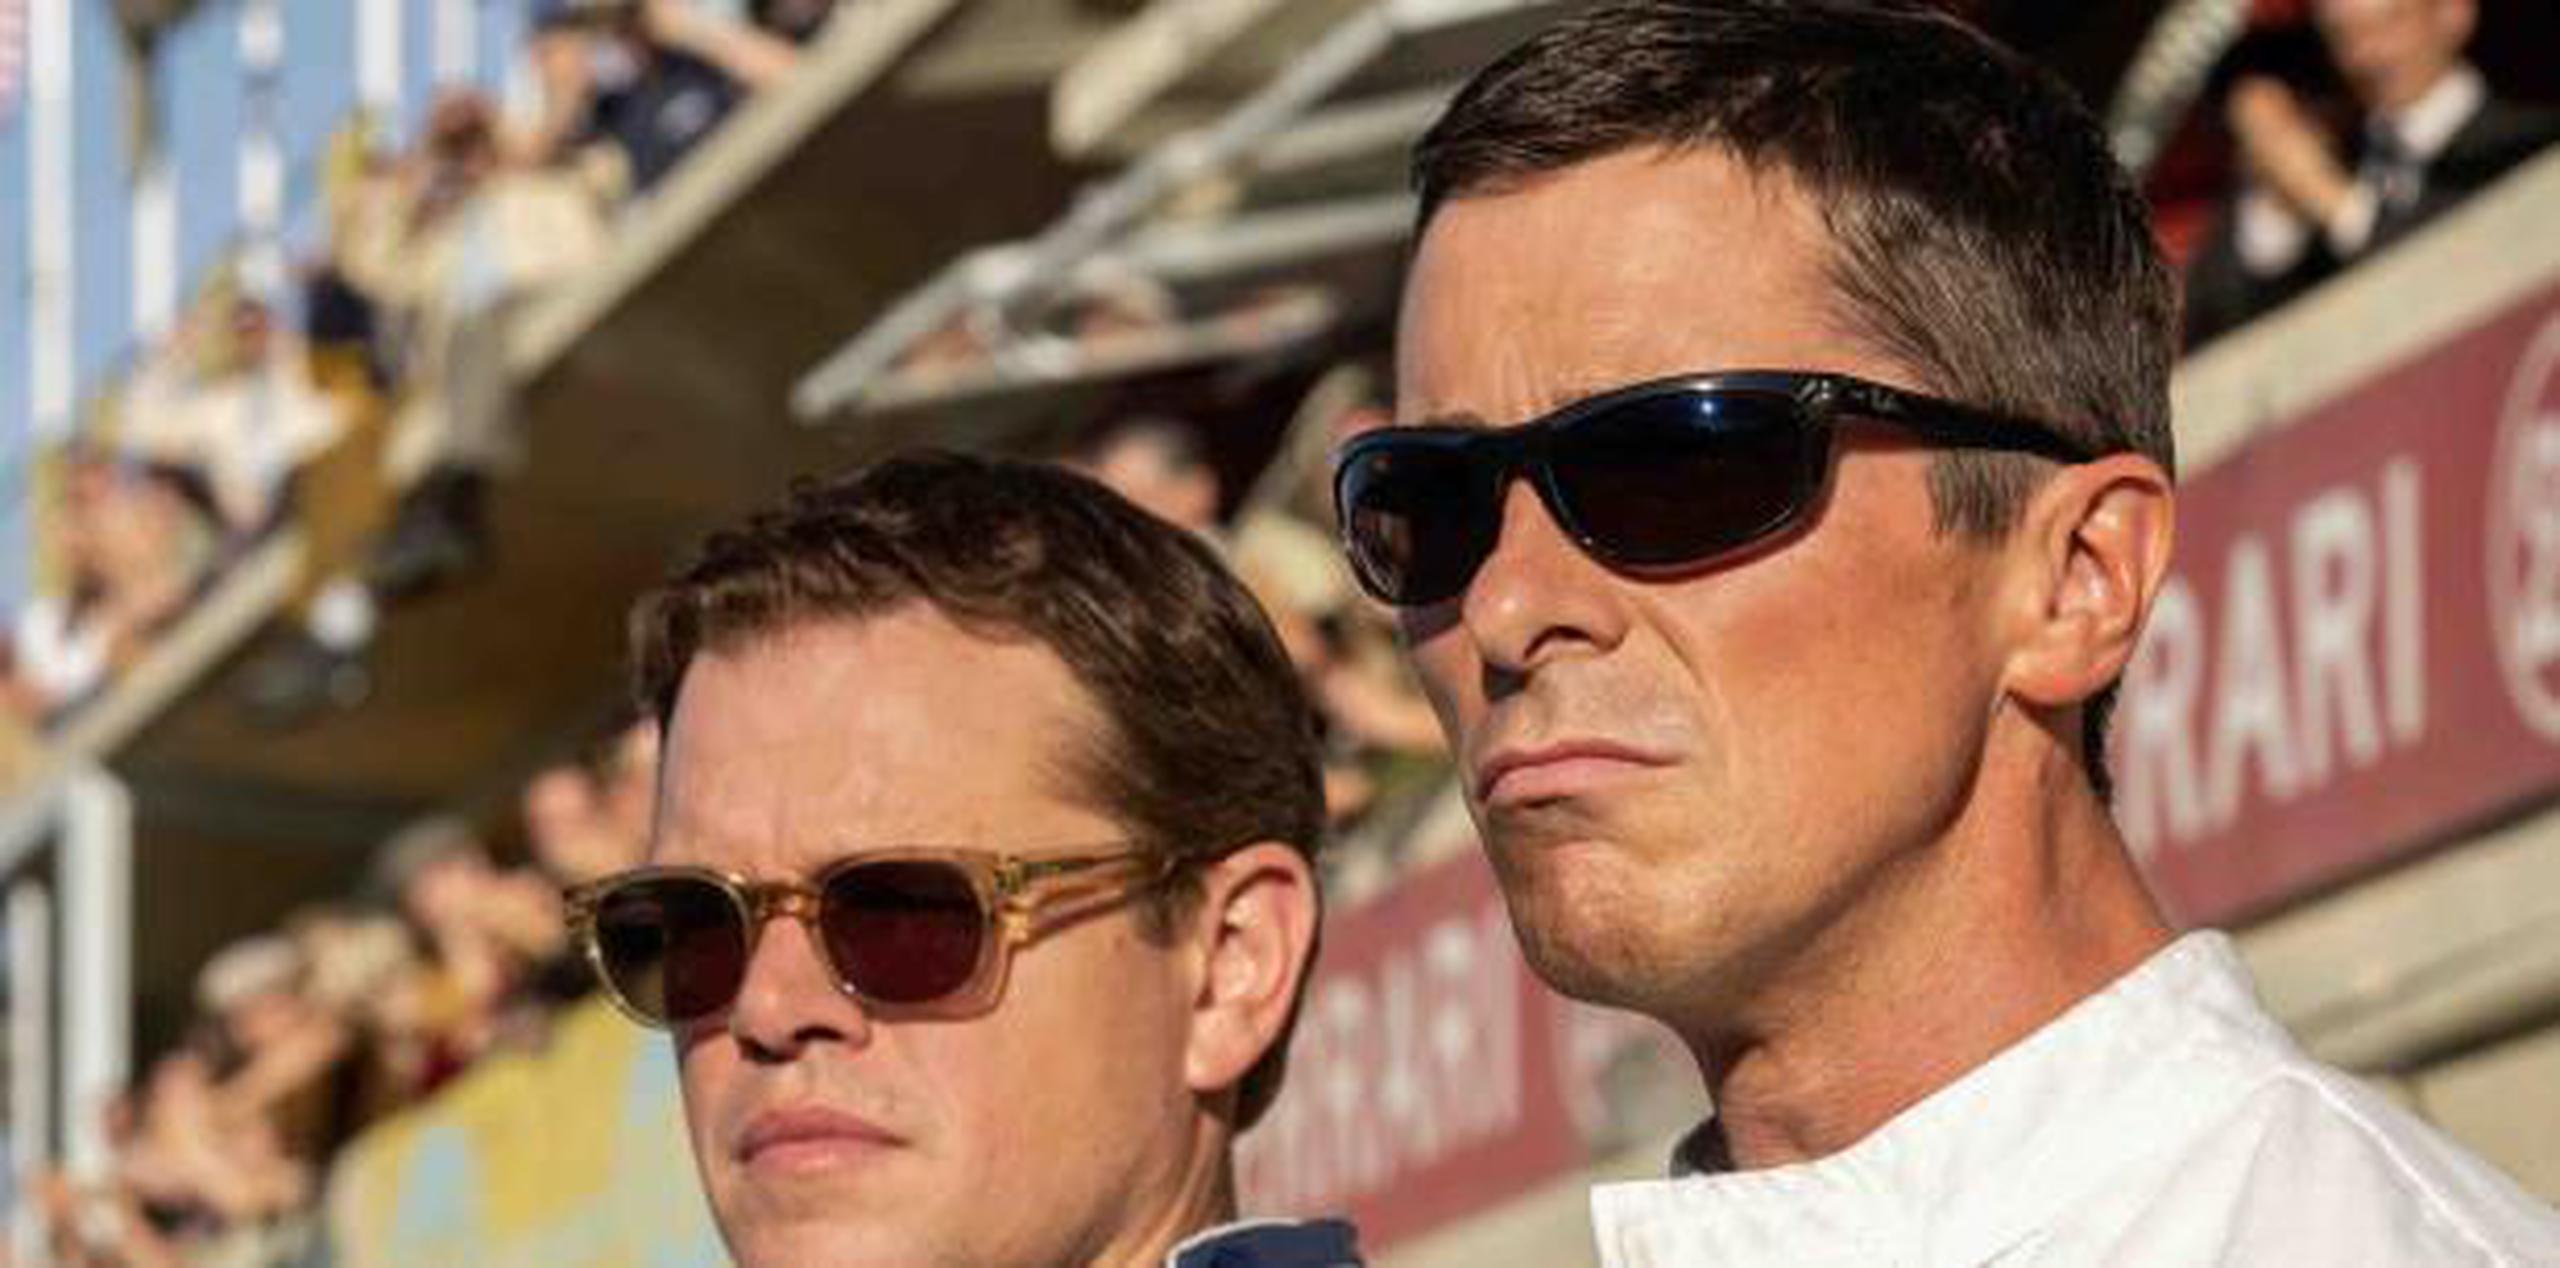 El drama sobre carrera de autos de James Mangold estrenó con buenas reseñas y alusiones al Oscar para sus protagonistas, Christian Bale y Matt Damon. (AP)